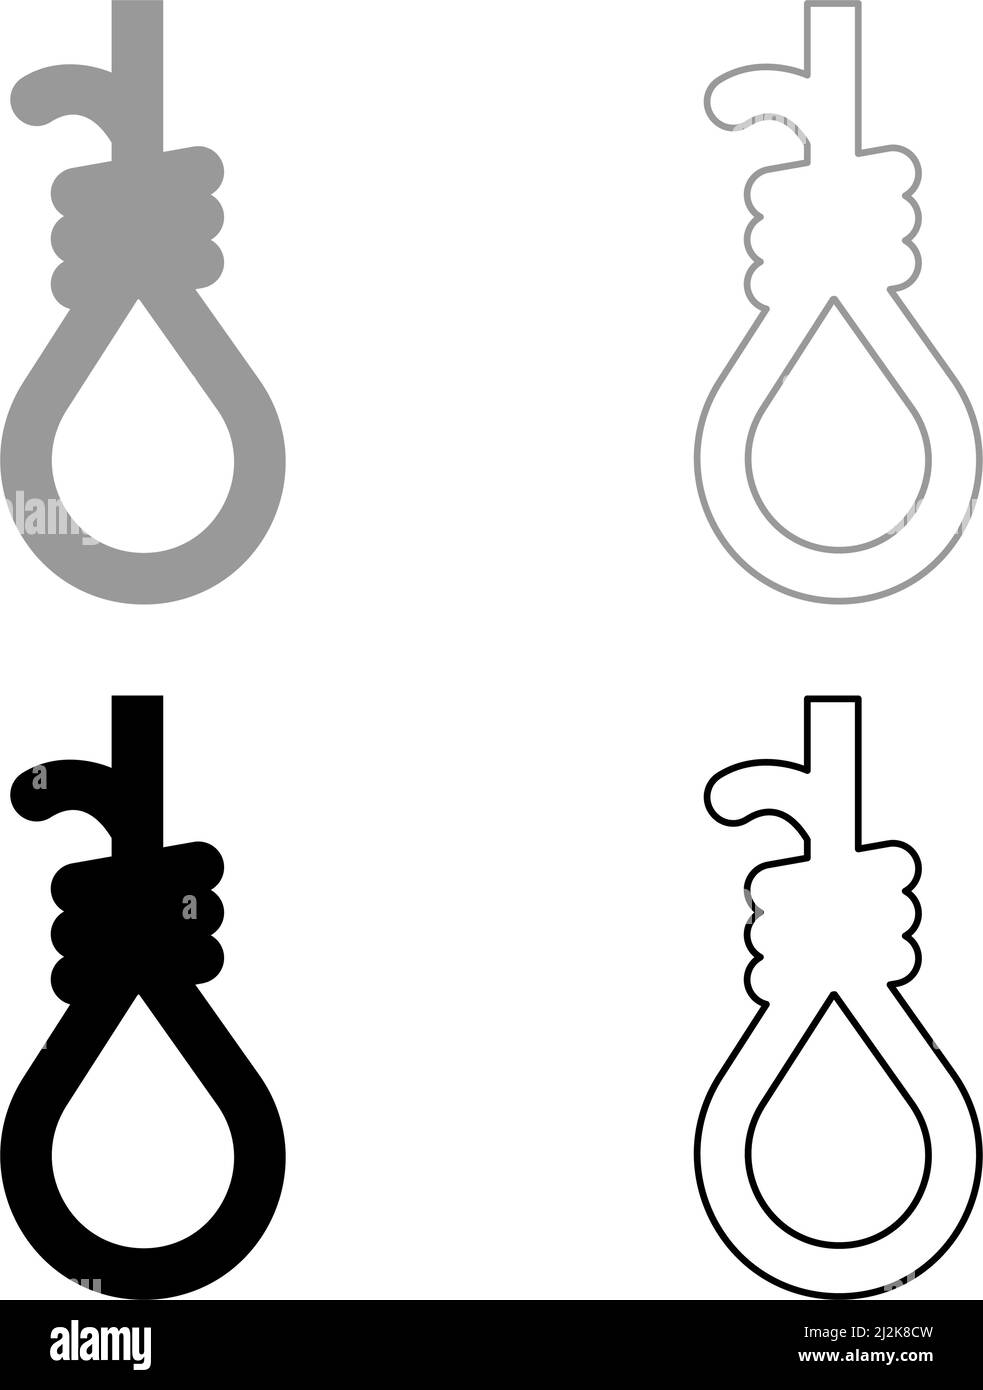 Schlaufe für Galgen Henker Schlinge Seil Selbstmord Lynch Set Symbol grau schwarz Farbe Vektor Illustration Bild einfach solide füllen Kontur Kontur Linie Stock Vektor